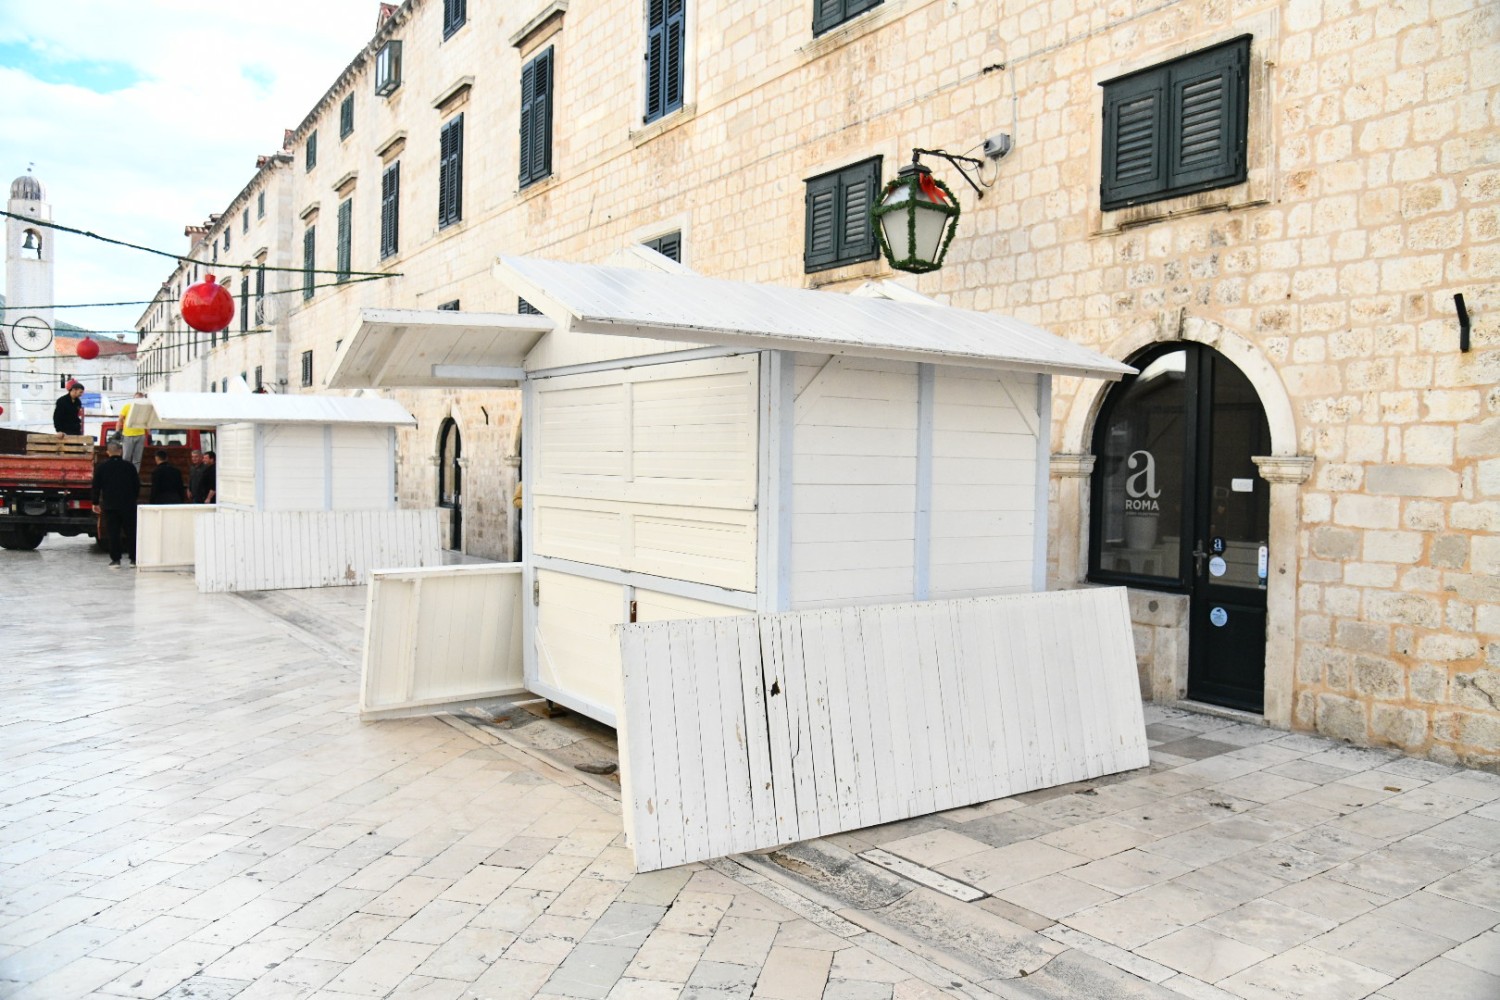 Postavljaju se kućice na Stradunu, Dubrovnik se sprema za Zimski festival (FOTO)